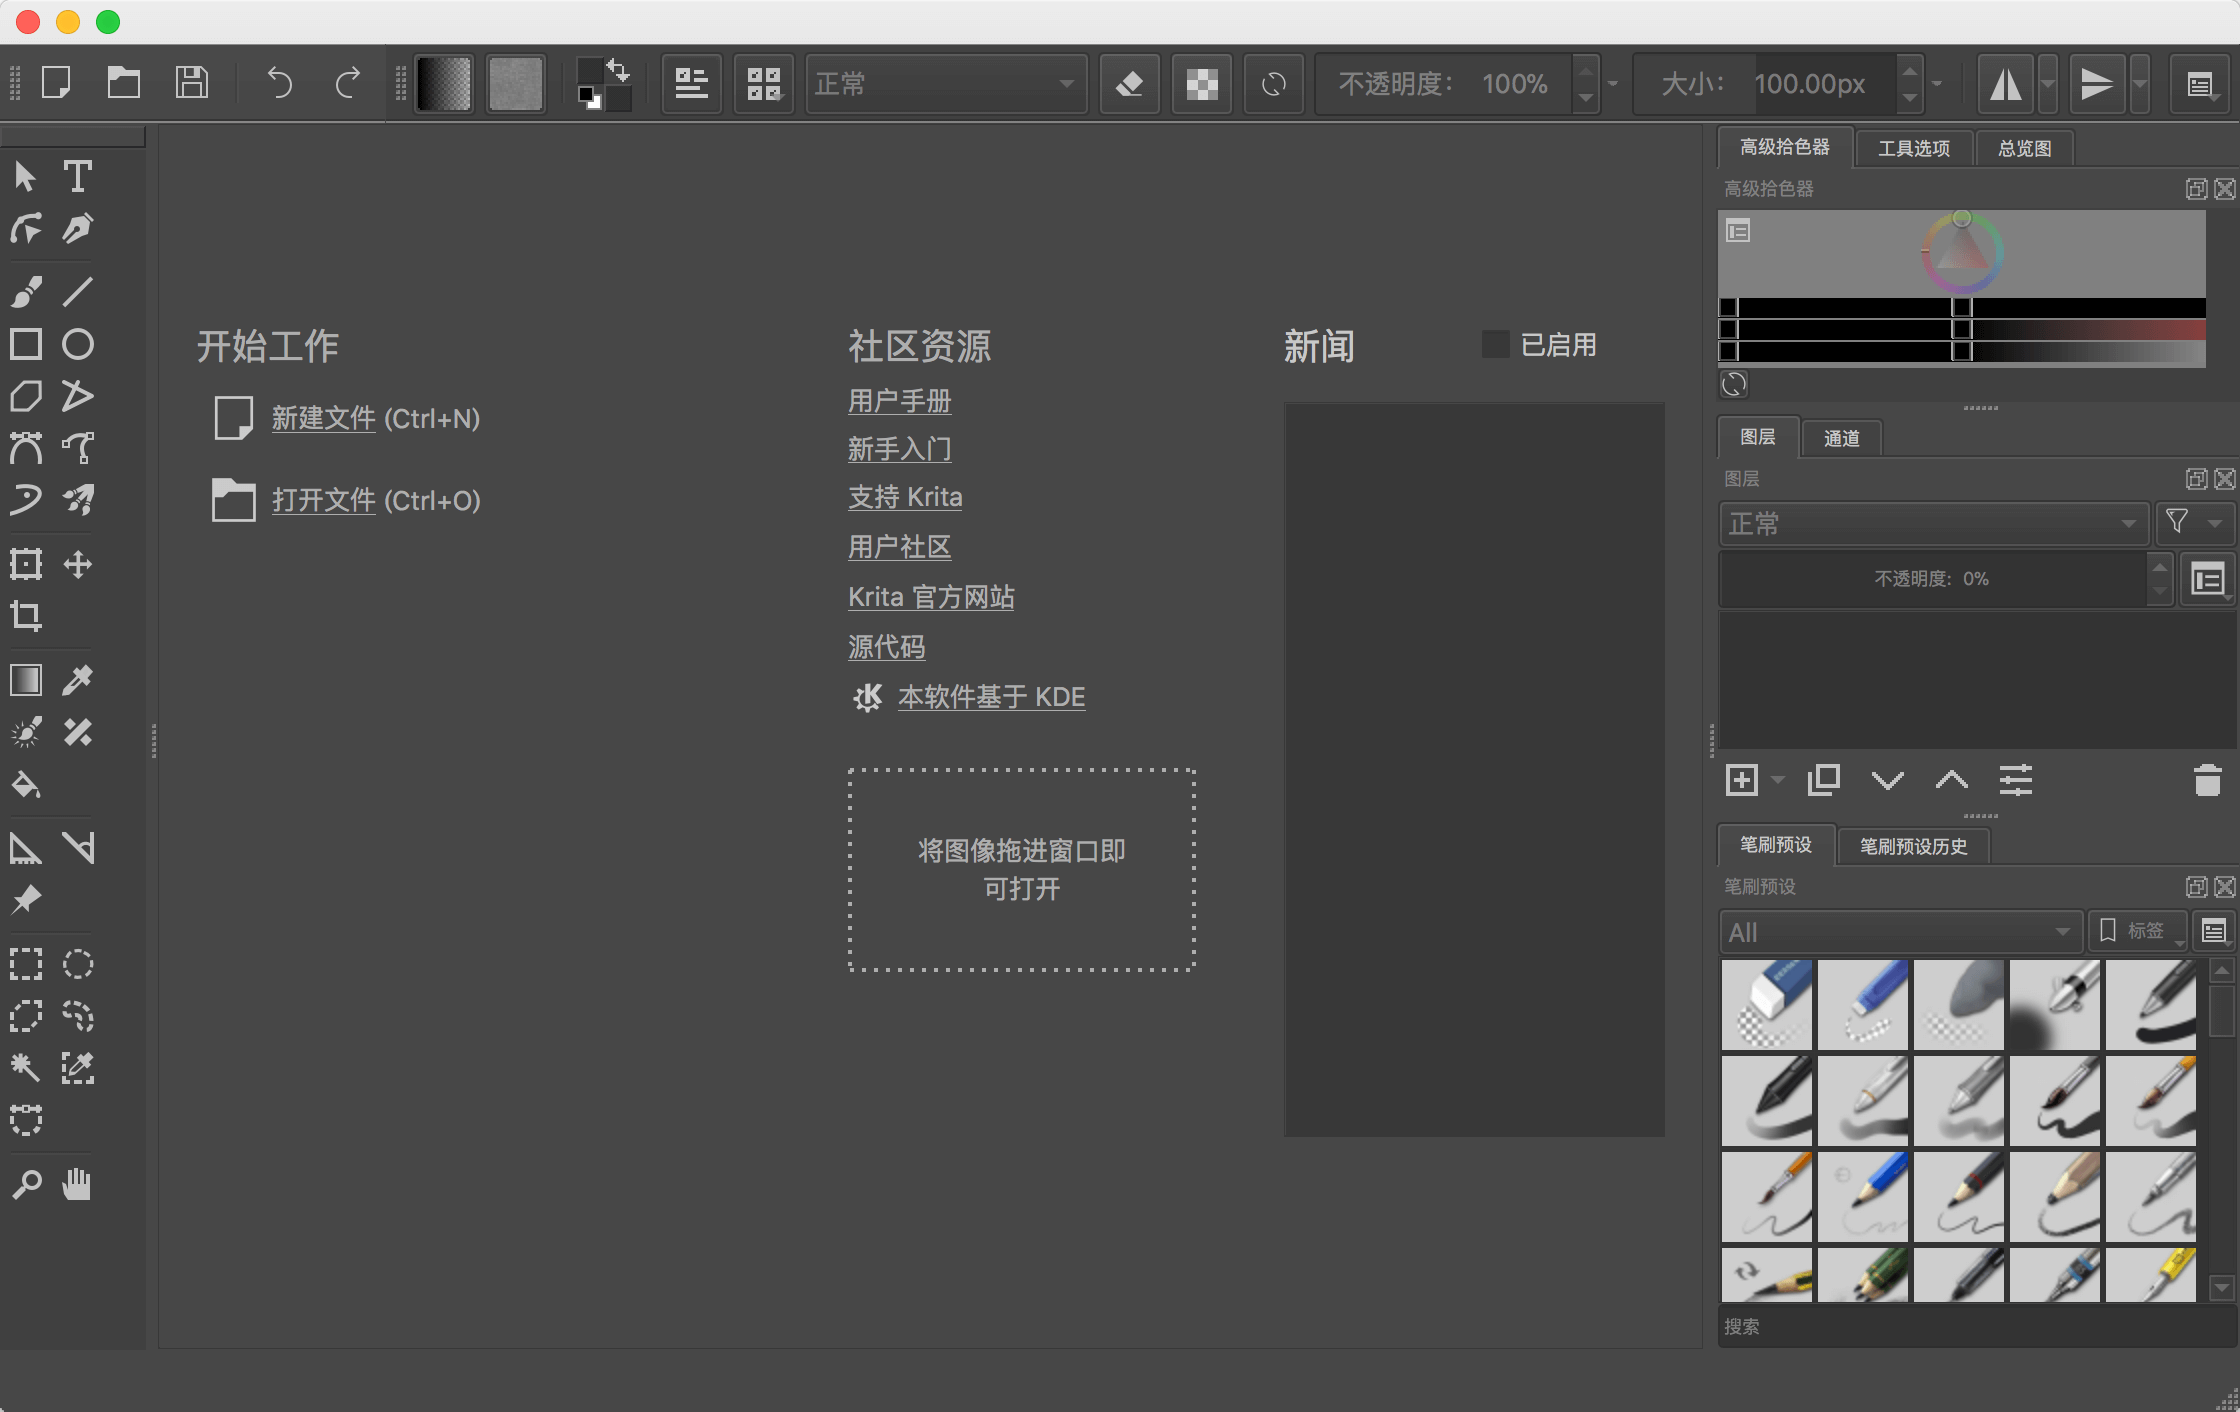 krita for mac 5.1.5中文版